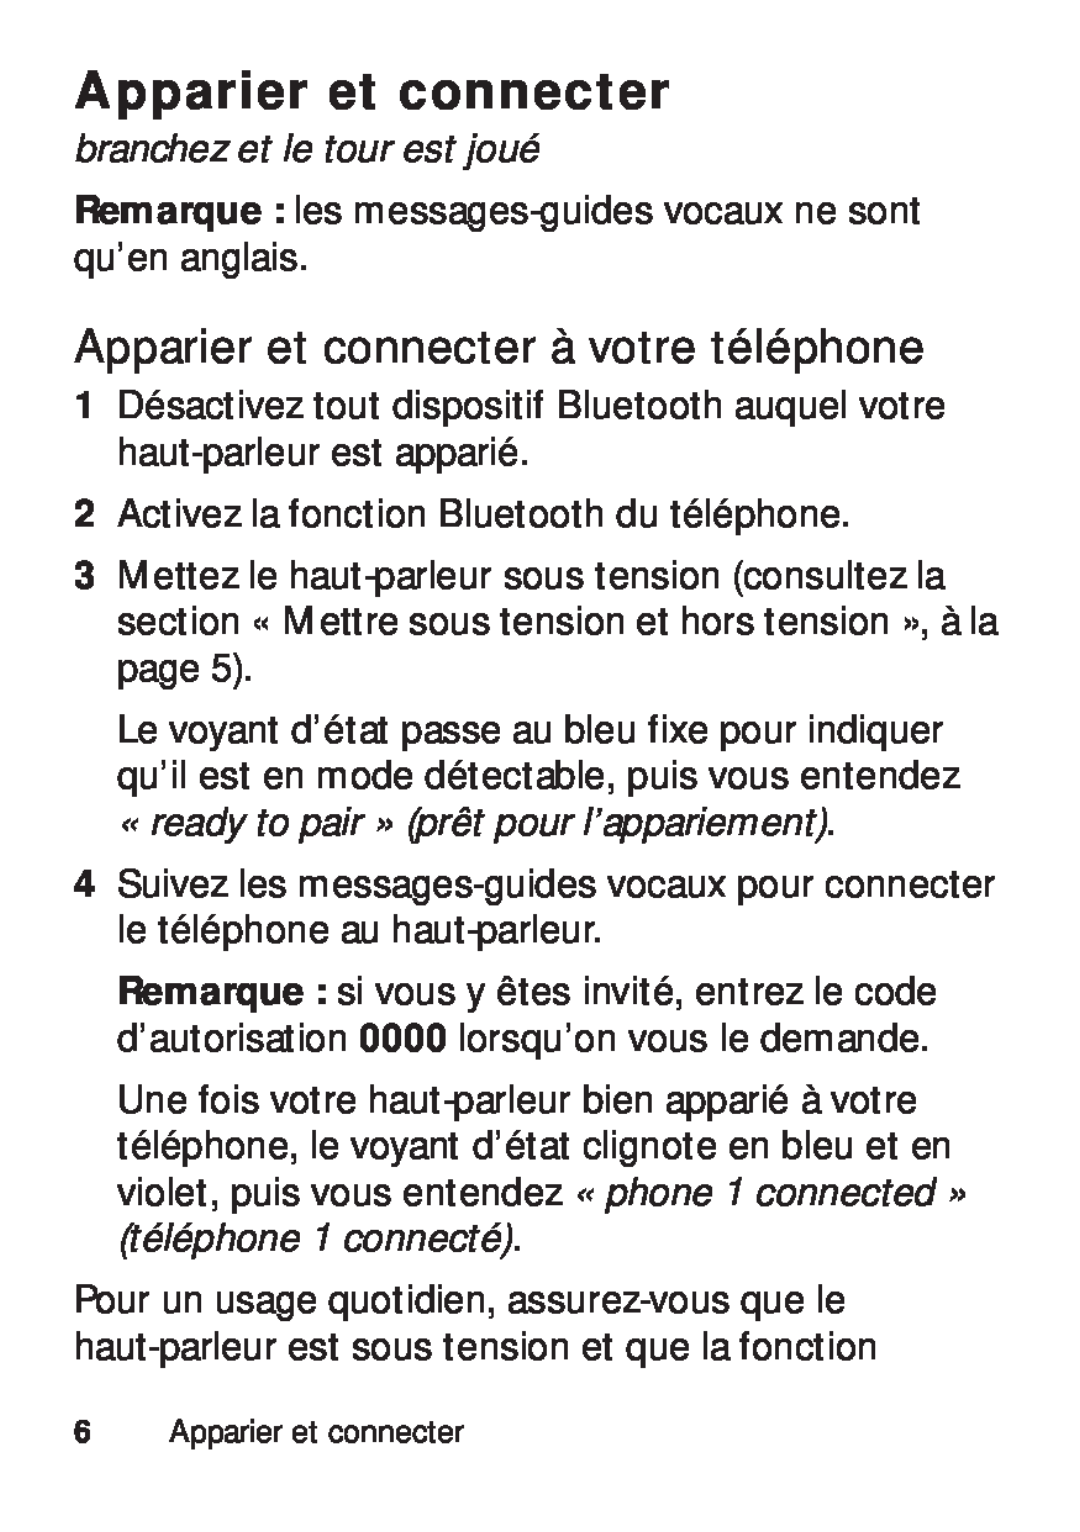 Motorola TX500 manual Apparier et connecter à votre téléphone, branchez et le tour est joué 